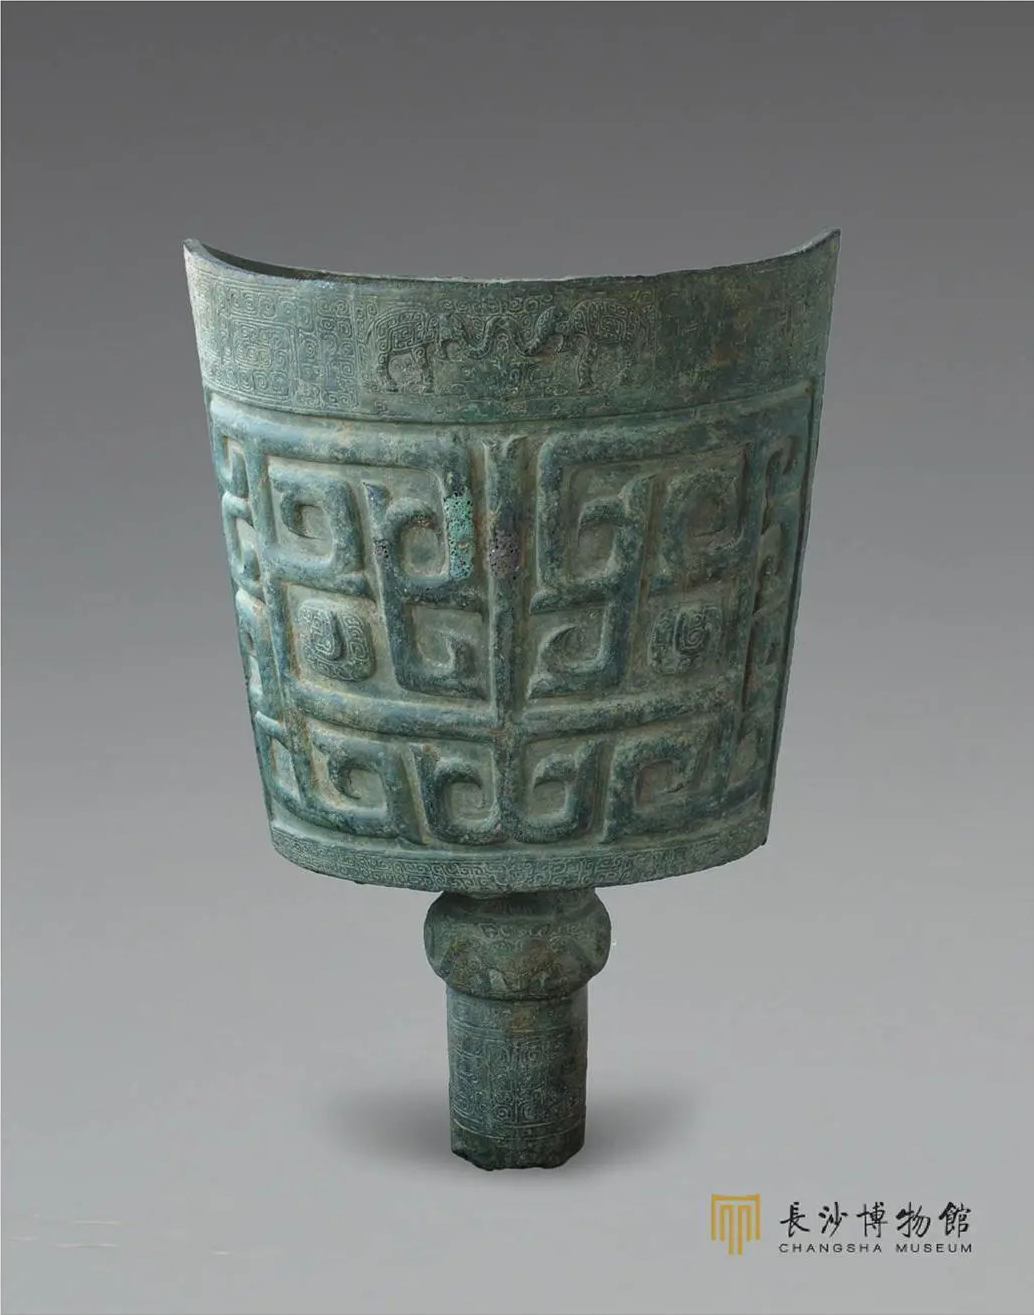 商象纹大铜铙，是长沙博物馆的镇馆之宝 ©长沙博物馆